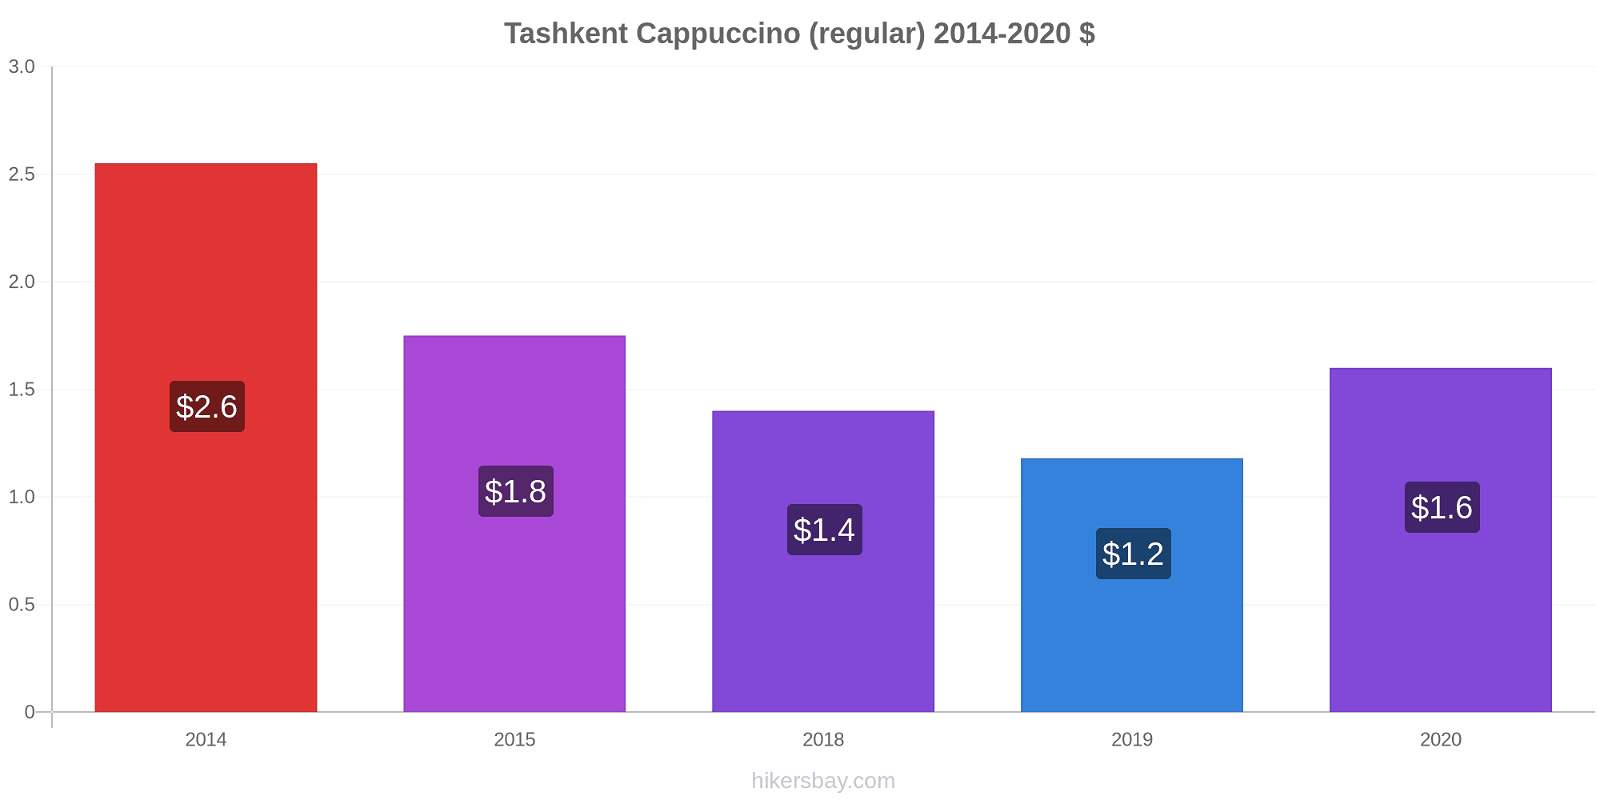 Tashkent price changes Cappuccino (regular) hikersbay.com